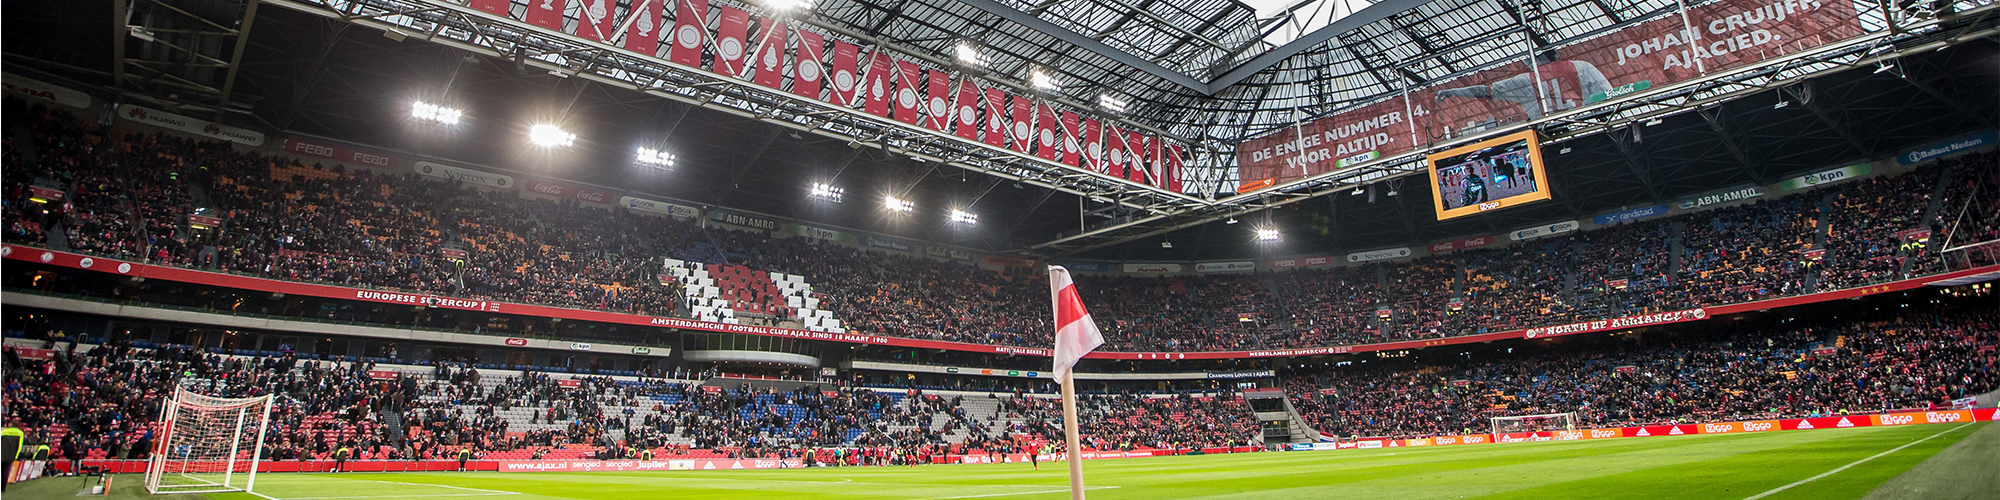 Ajax Tickets & Experiences